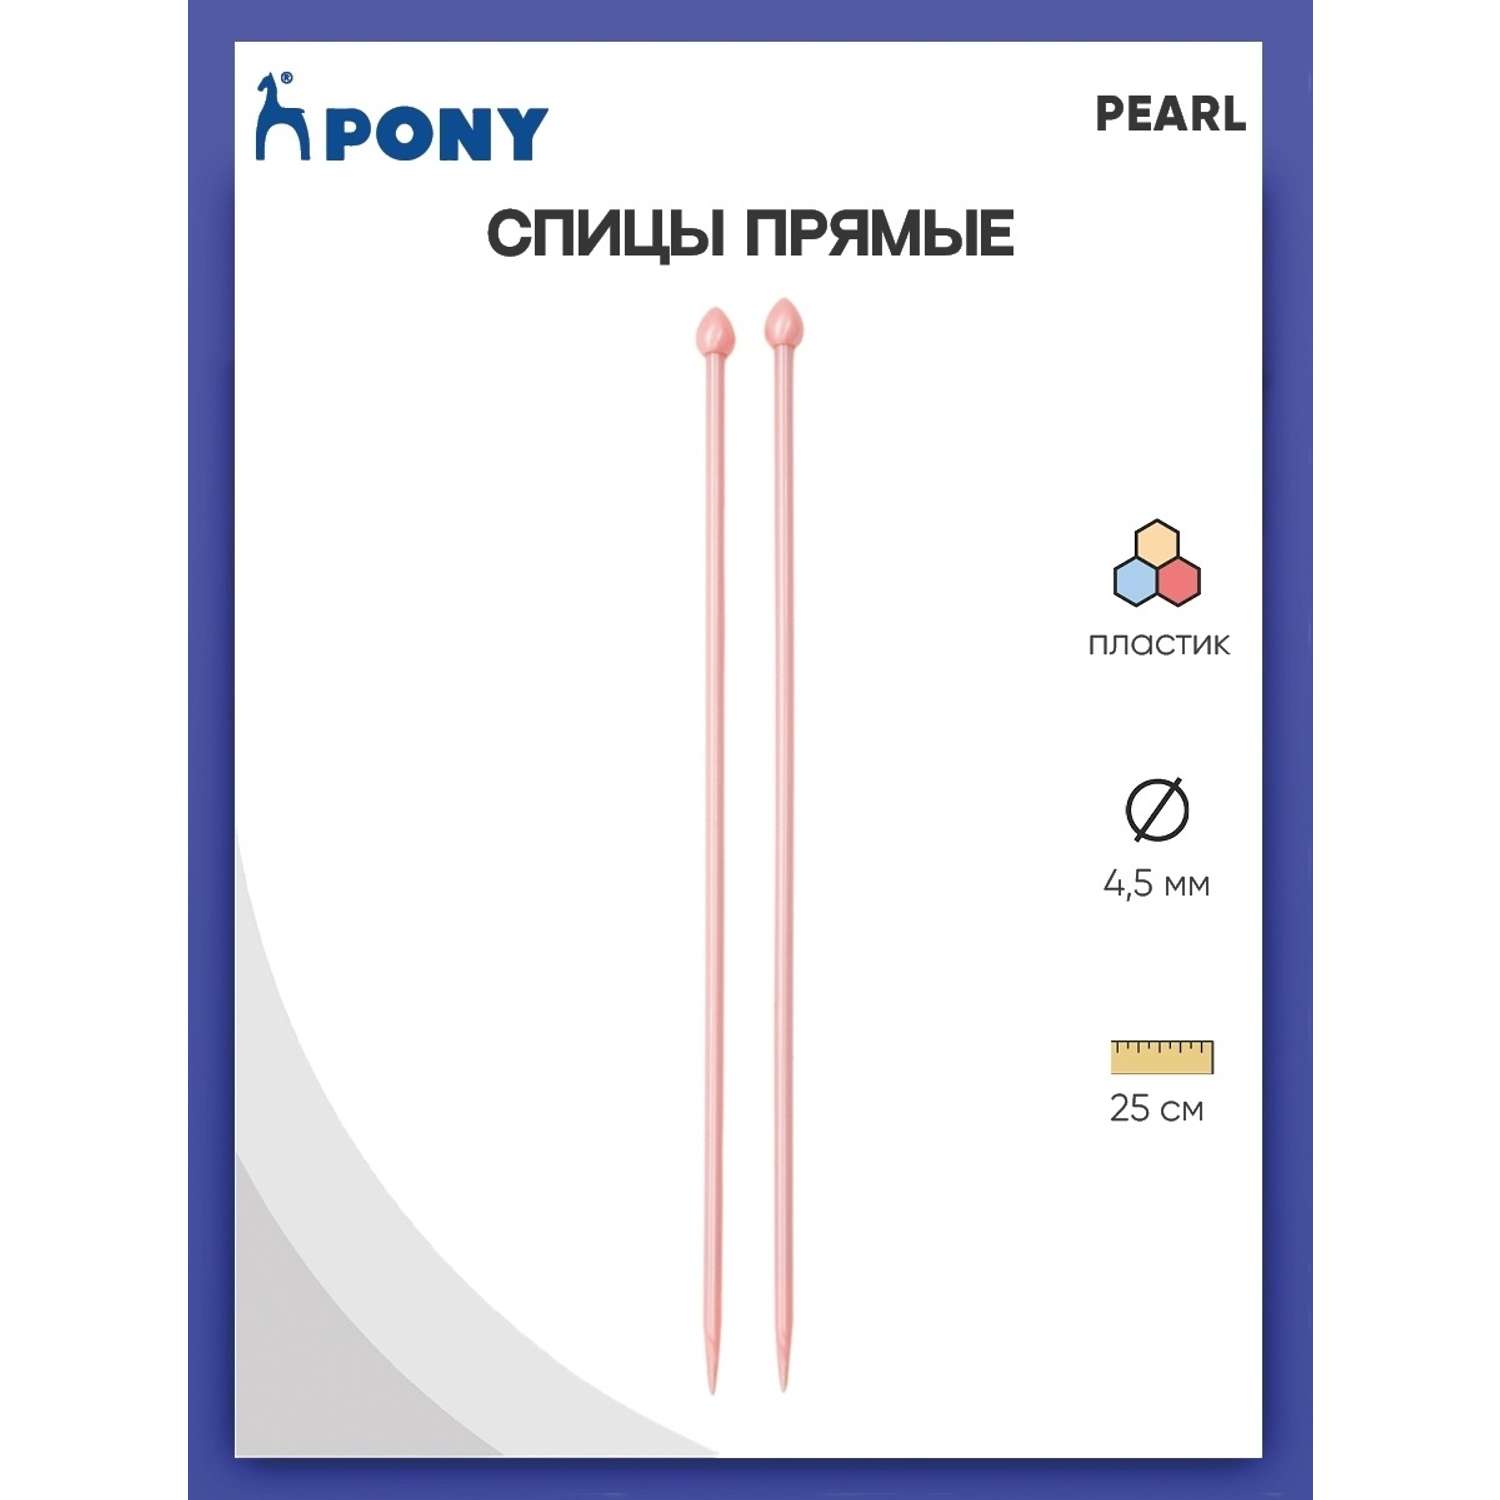 Спицы прямые Pony пластиковые для начинающих PEARL 4.5 мм 25 см розовые 31629 - фото 1